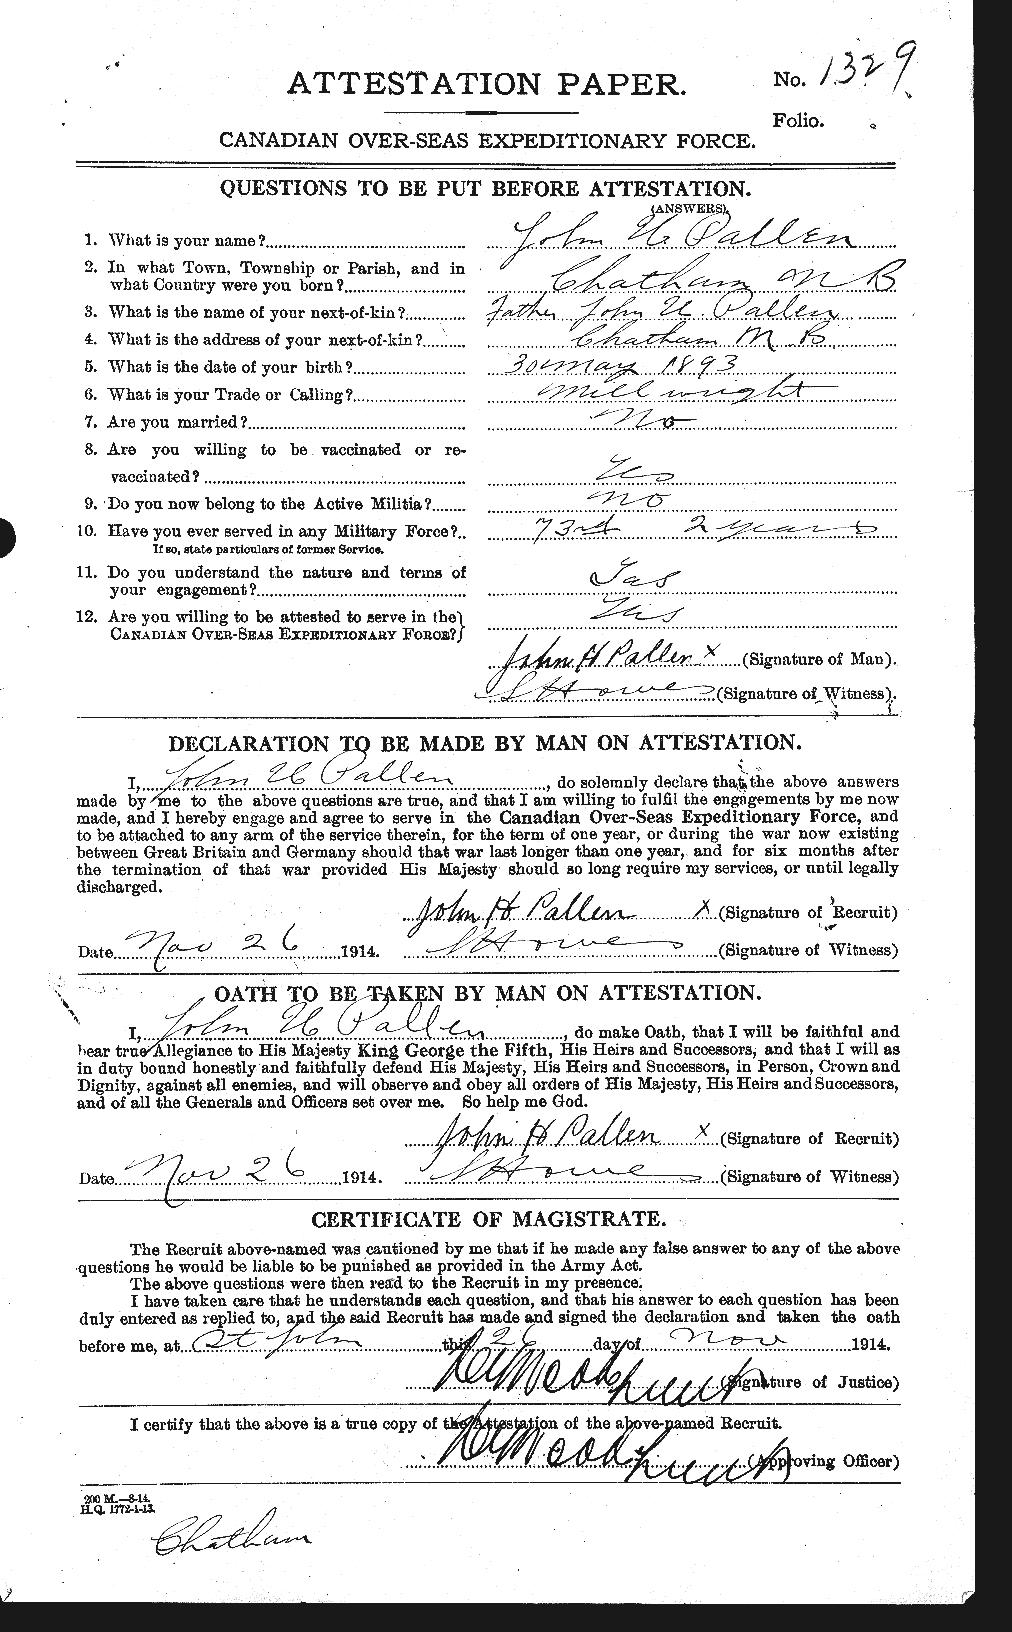 Dossiers du Personnel de la Première Guerre mondiale - CEC 562672a